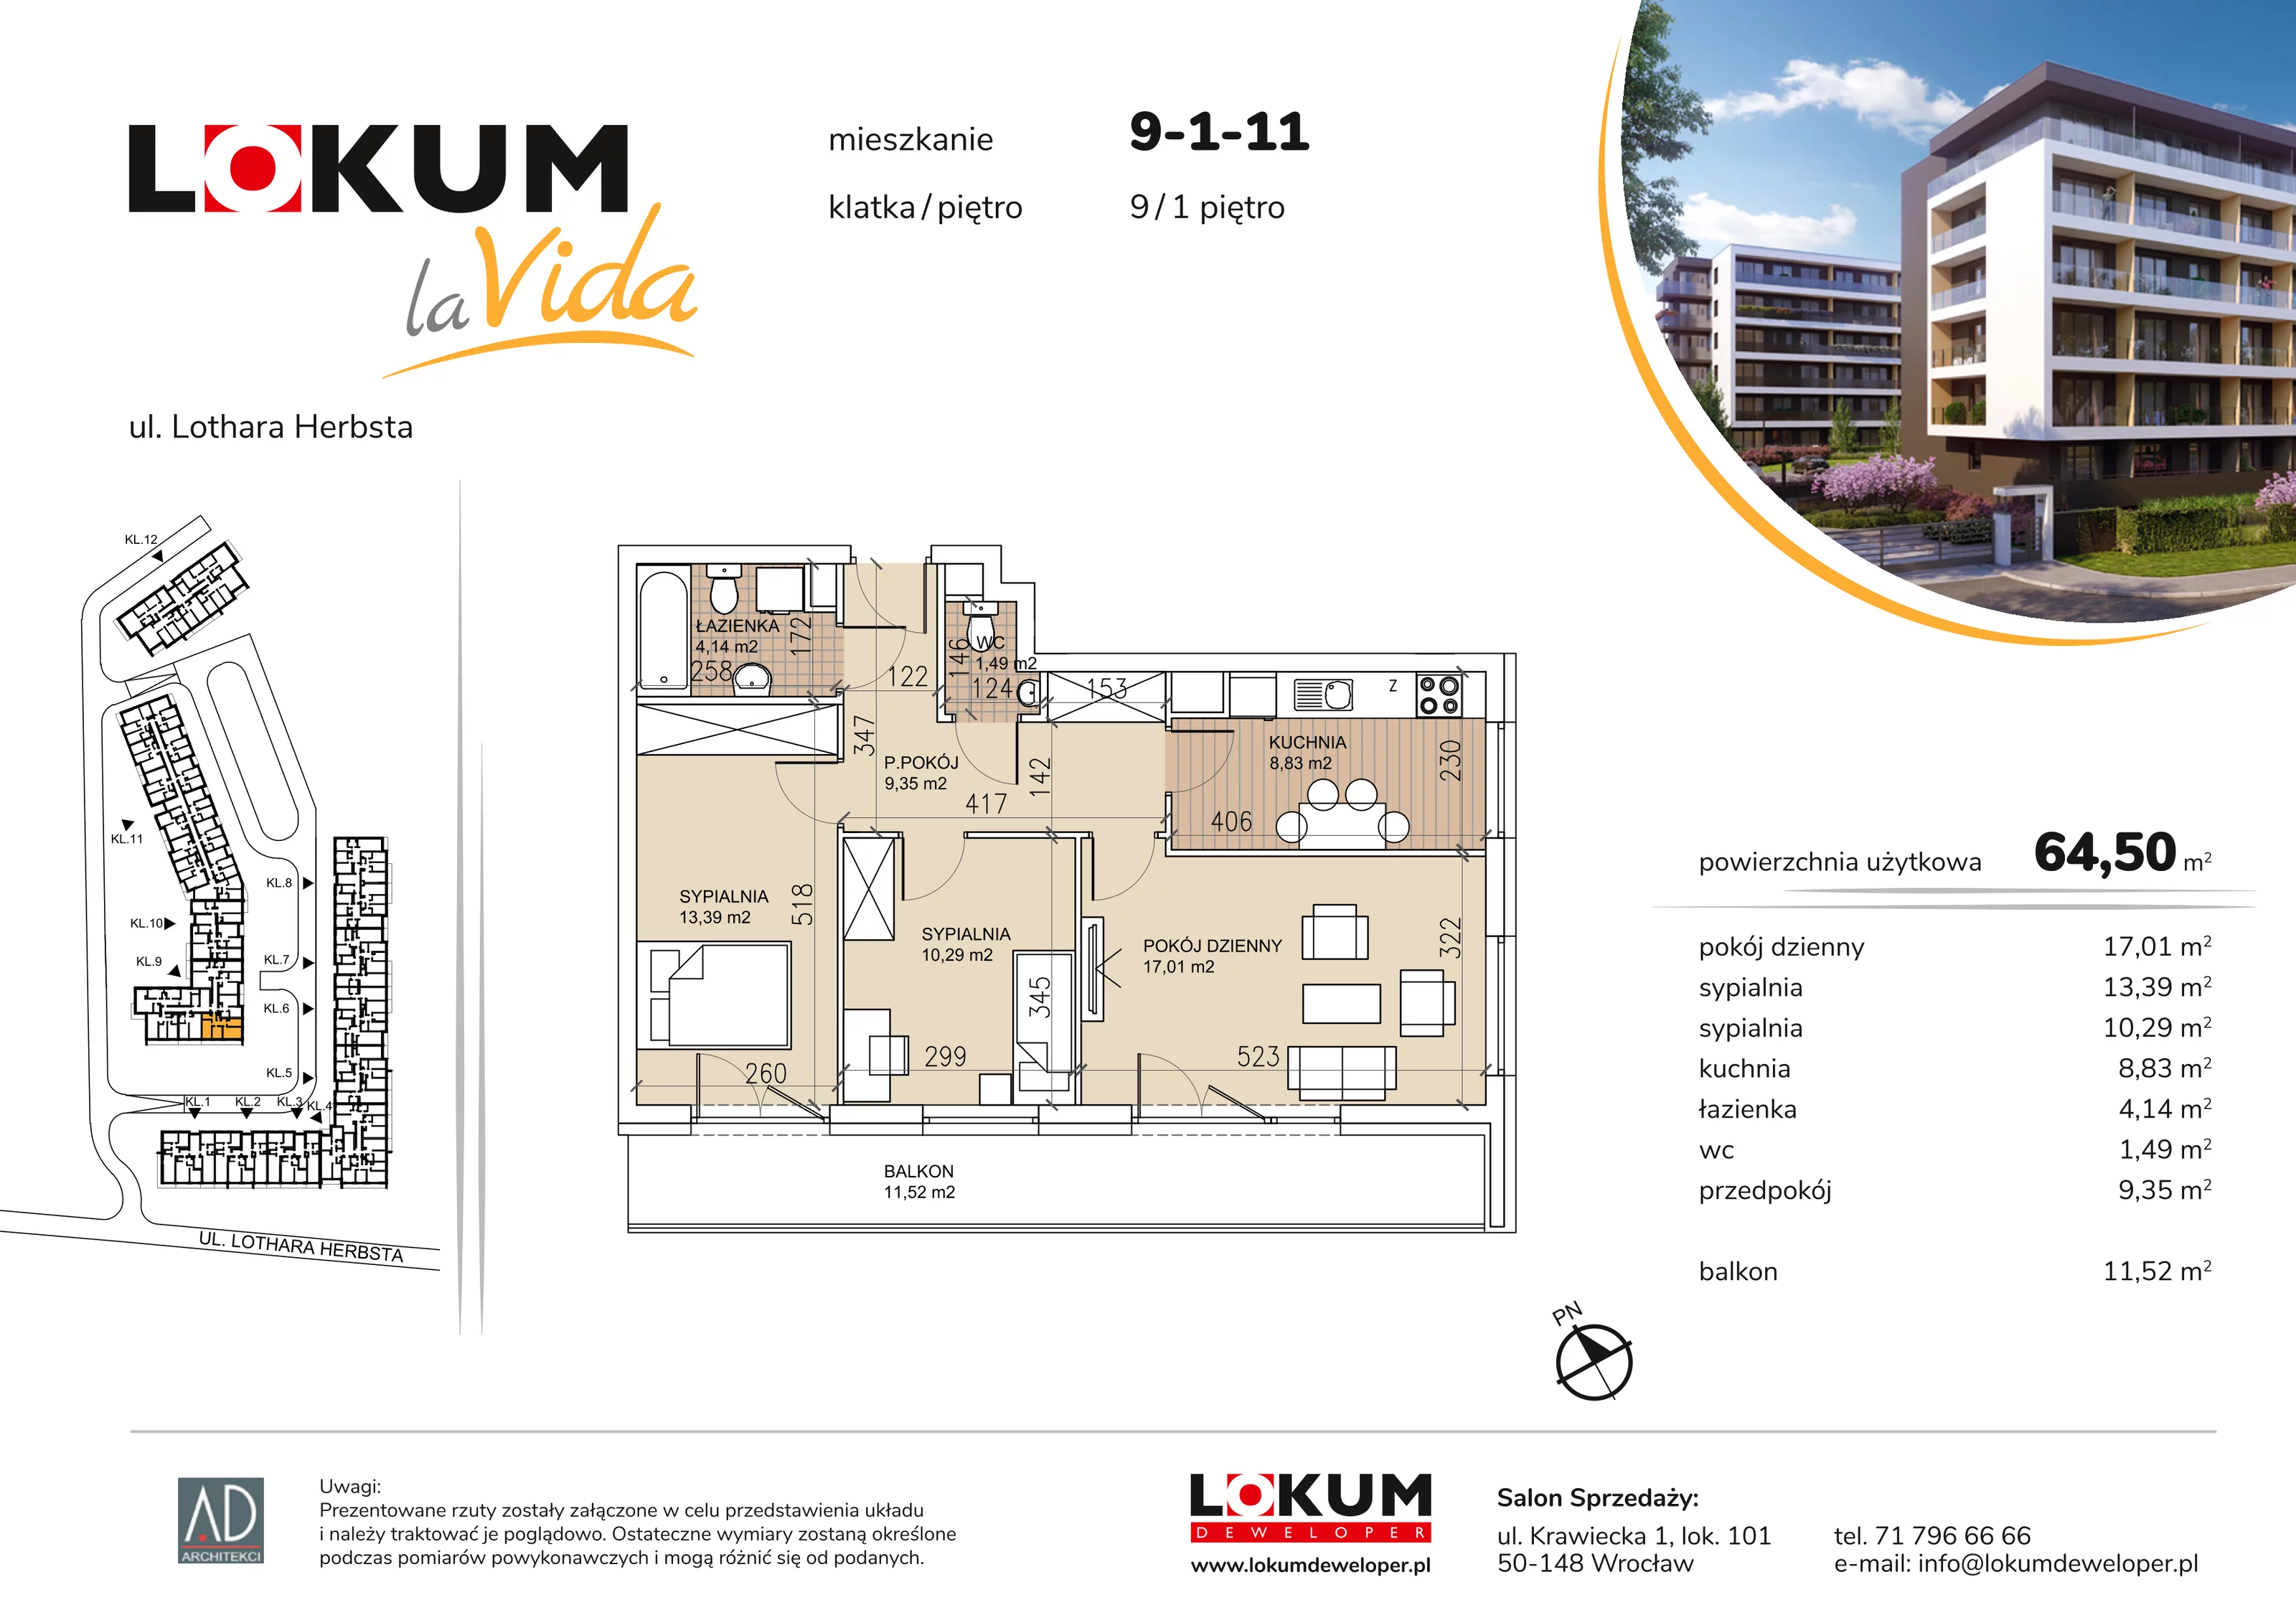 Mieszkanie 64,50 m², piętro 1, oferta nr 9-1-11, Lokum la Vida, Wrocław, Sołtysowice, ul. Lothara Herbsta